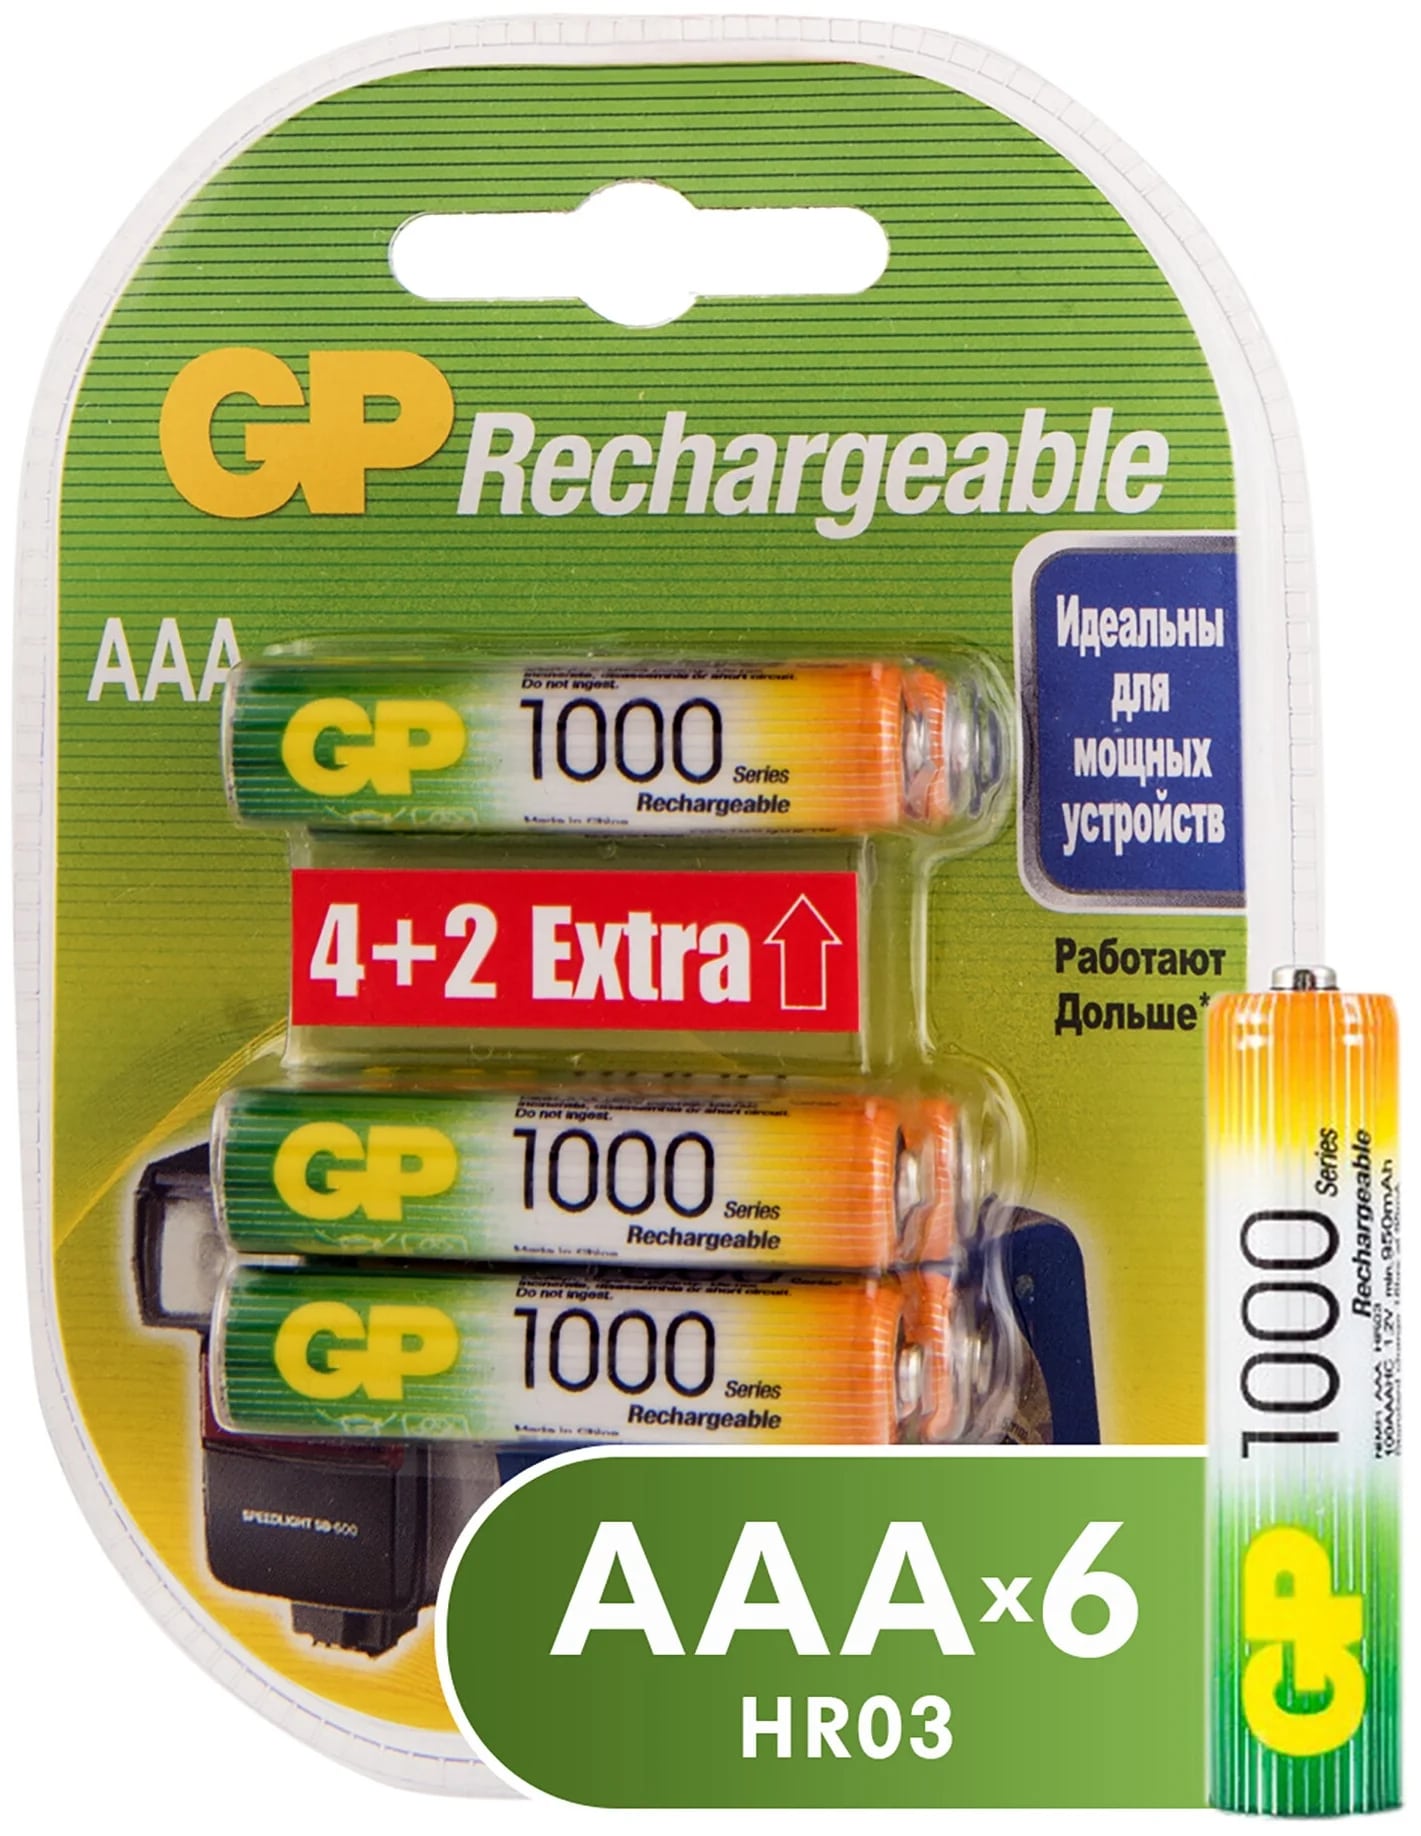 Аккумуляторы GP Batteries перезаряжаемые, AAA, 930 мАч, 6 шт набор аккумуляторов gp batteries перезаряжаемых аа и aaa 2650 и 930 мач 8 шт